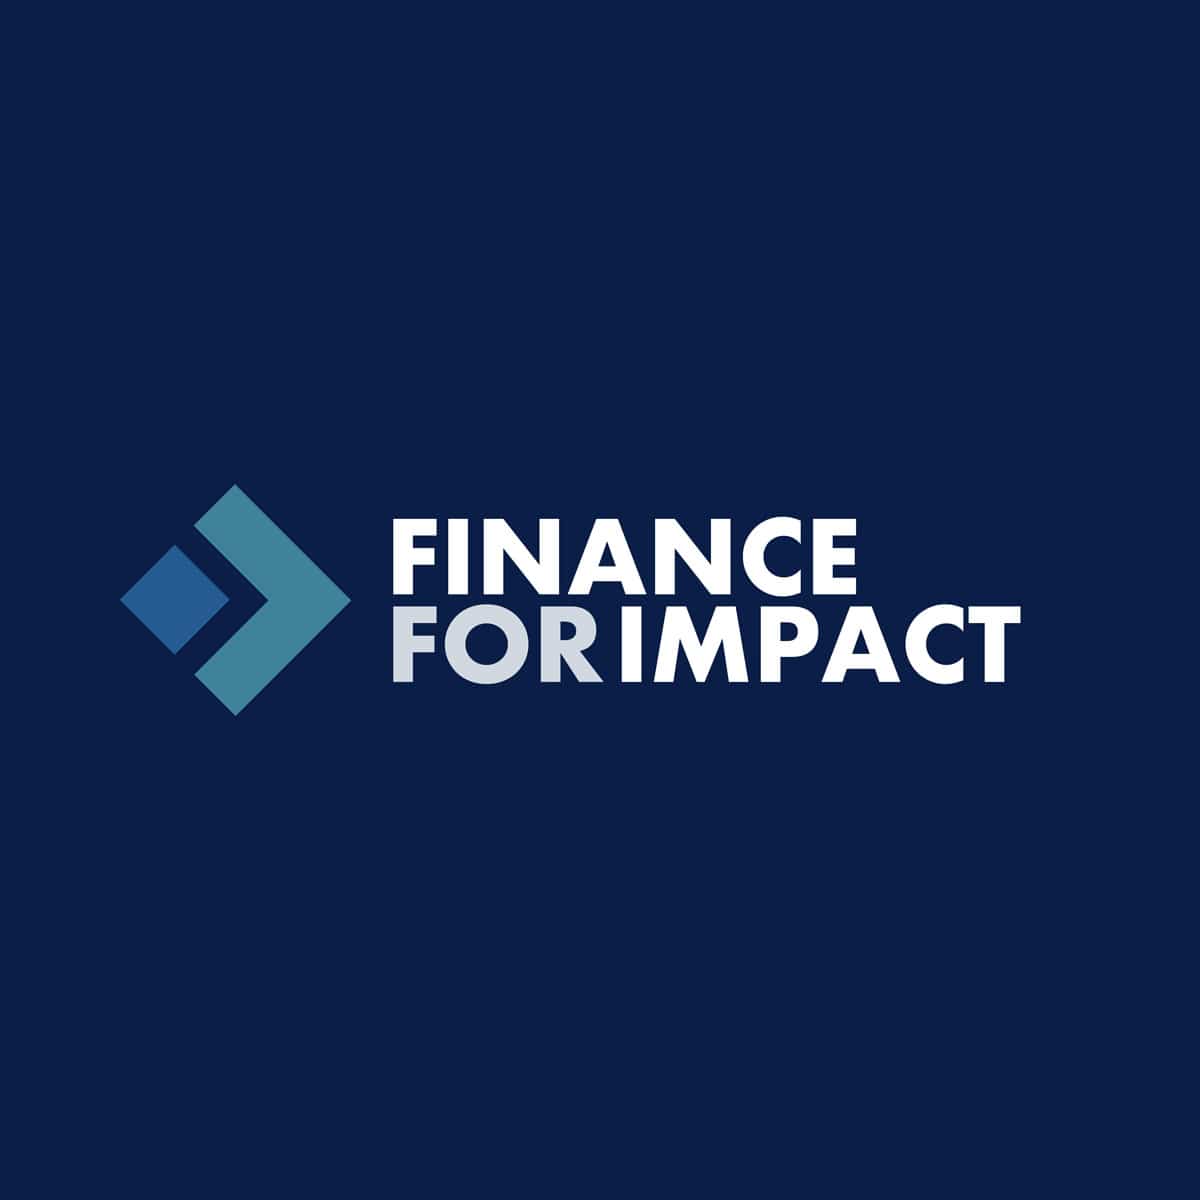 Finance for Impact Branding